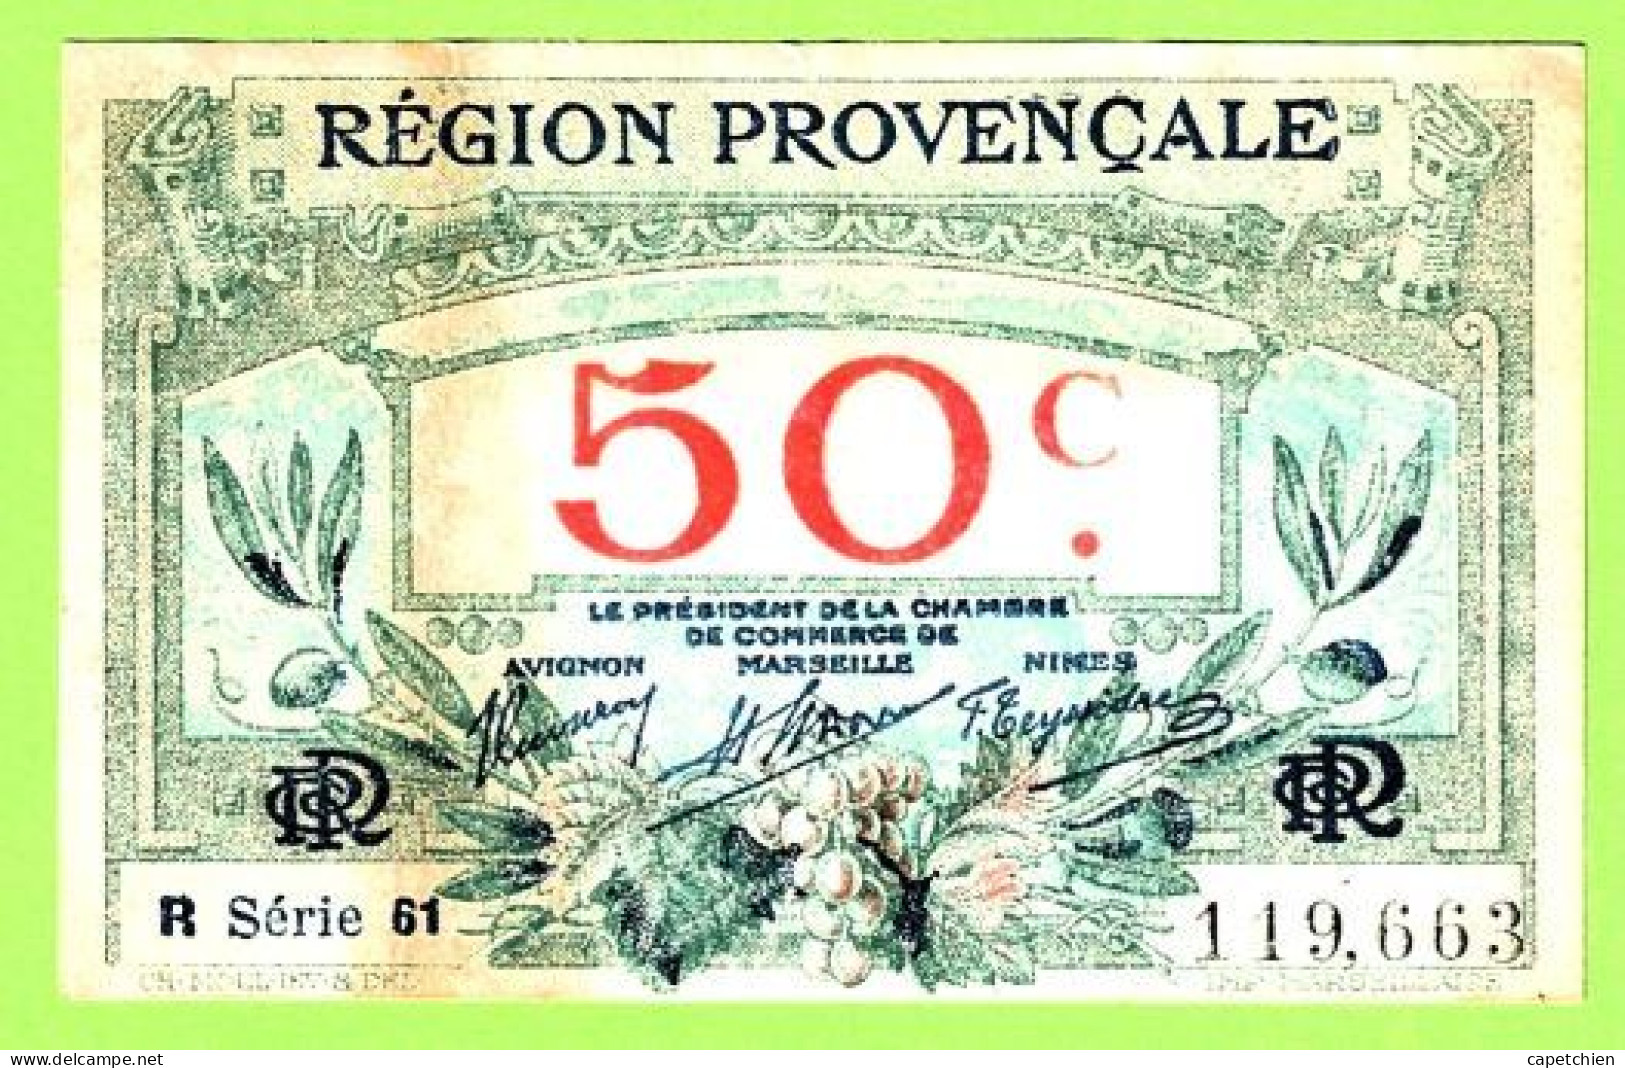 FRANCE / CHAMBRE De COMMERCE / REGION PROVENCALE / 50 CENTIMES / 119663 / R  SERIE 61 - Cámara De Comercio